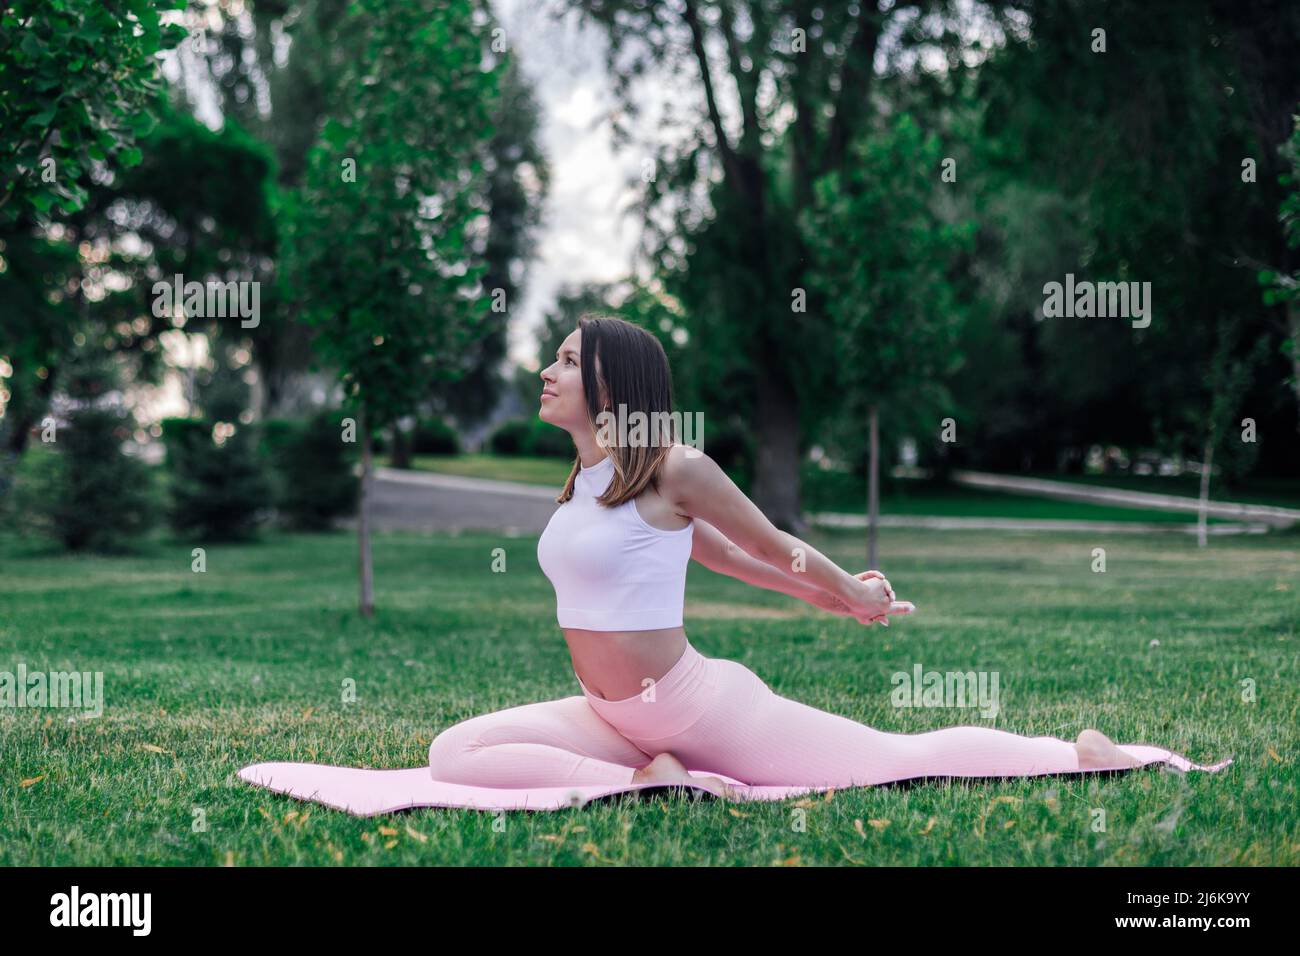 Junge athletische Frau praktiziert Yoga auf Gymnastikmatte im grünen Park auf Gras. Machen Sie Stretching-Übungen für eine gute Haltung in Sportbekleidung, freien Kopieplatz Stockfoto